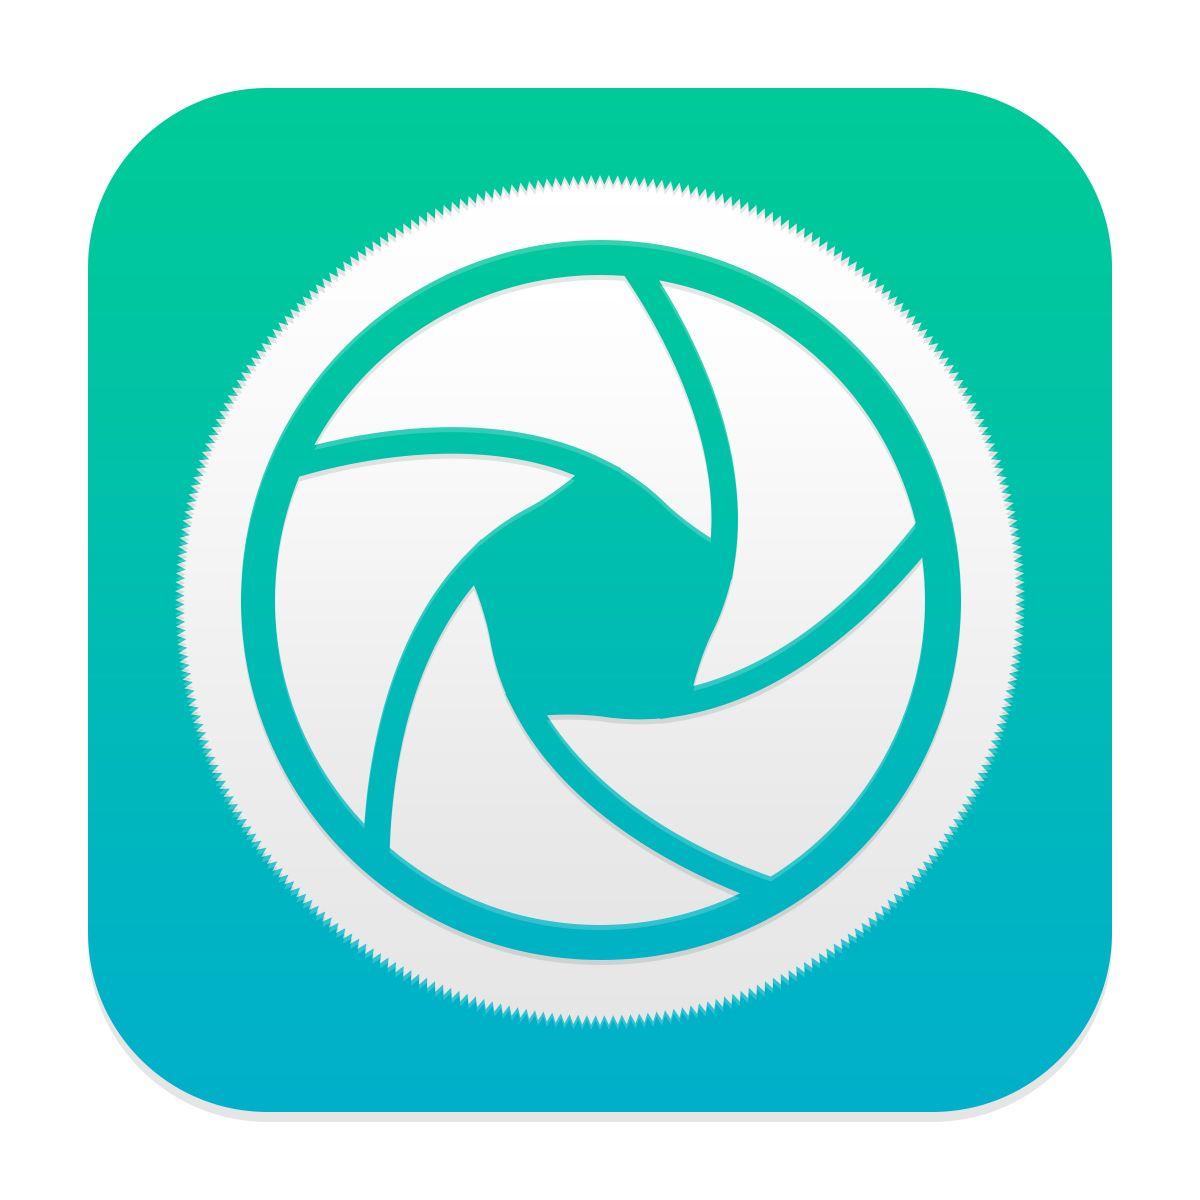 Camera App Logo - iOS7 Camera app icon. Best App Icon